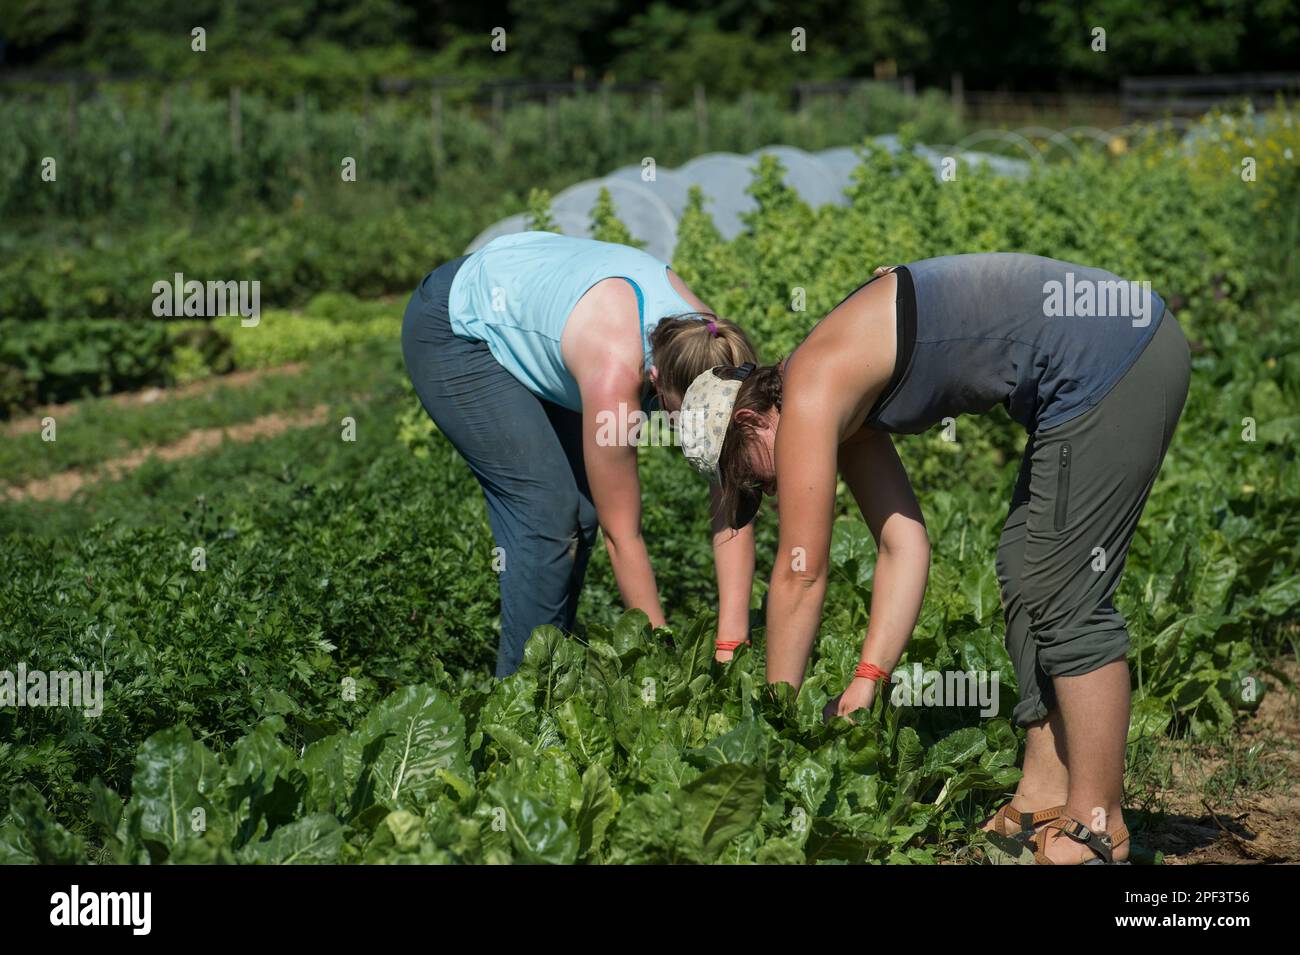 UNITED STATES - Juni 26, 2019: Katie Miller und Kate Zoeller Ernte Anfang der Saison Ernten beim Bainum Family Foundation Farm in der Nähe von Middelburg. Pflanzen co Stockfoto